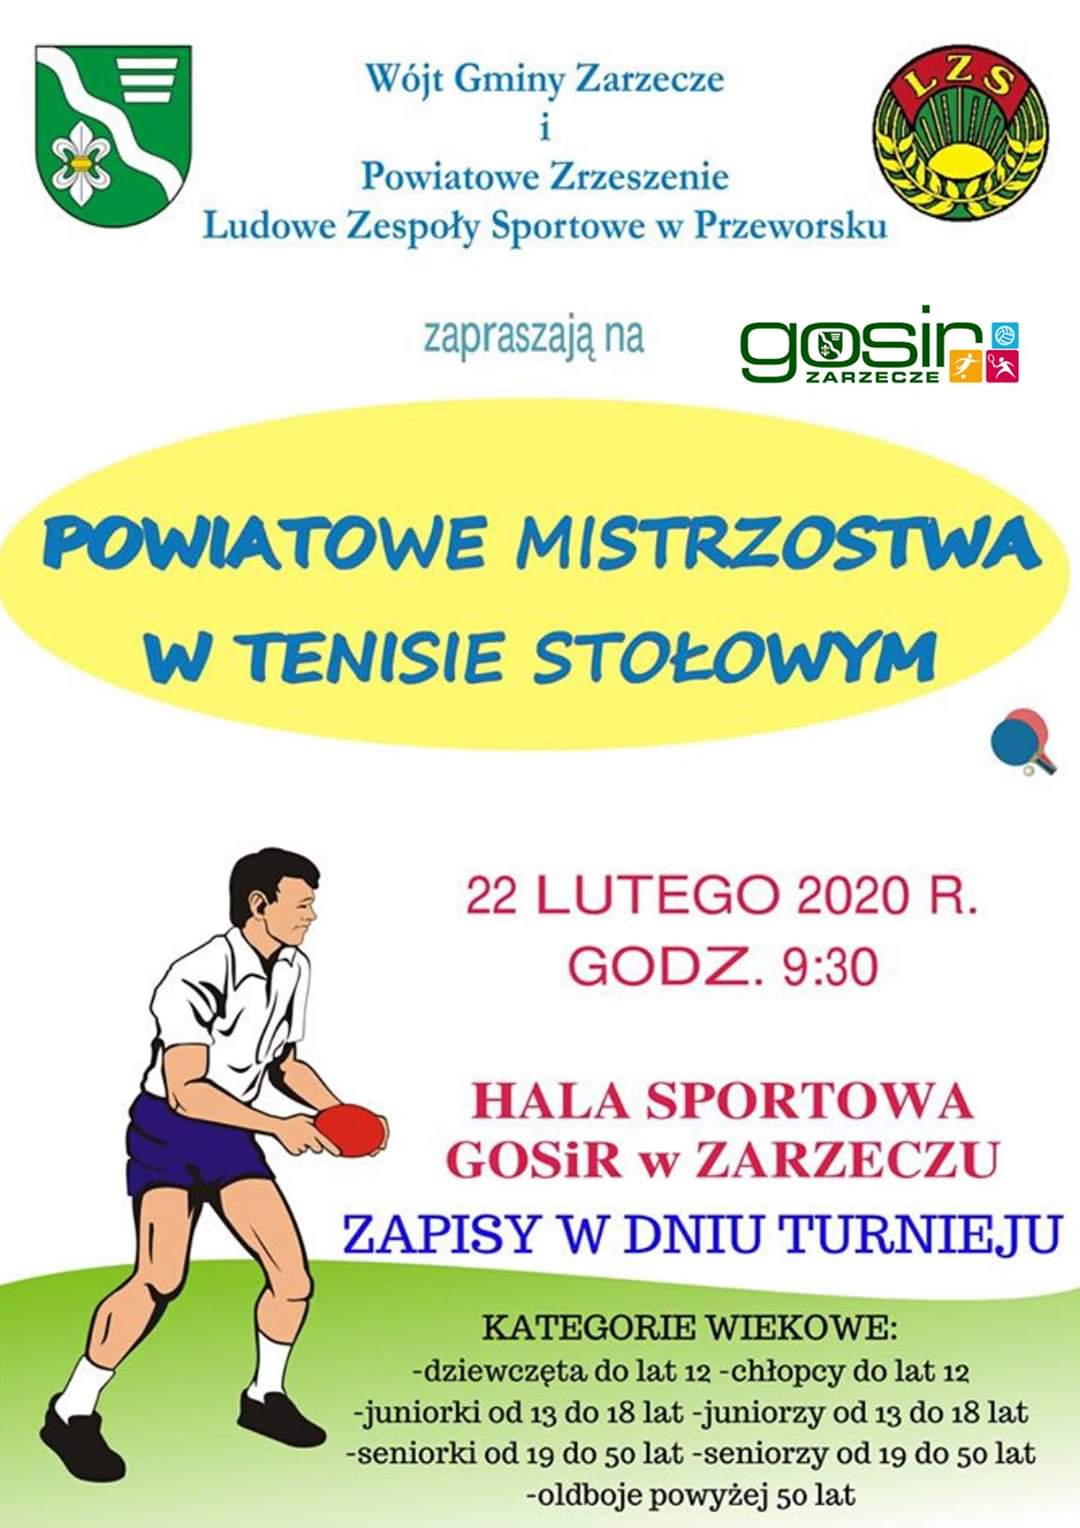 Powiatowe Mistrzostwa w tenisie stołowym w Zarzeczu